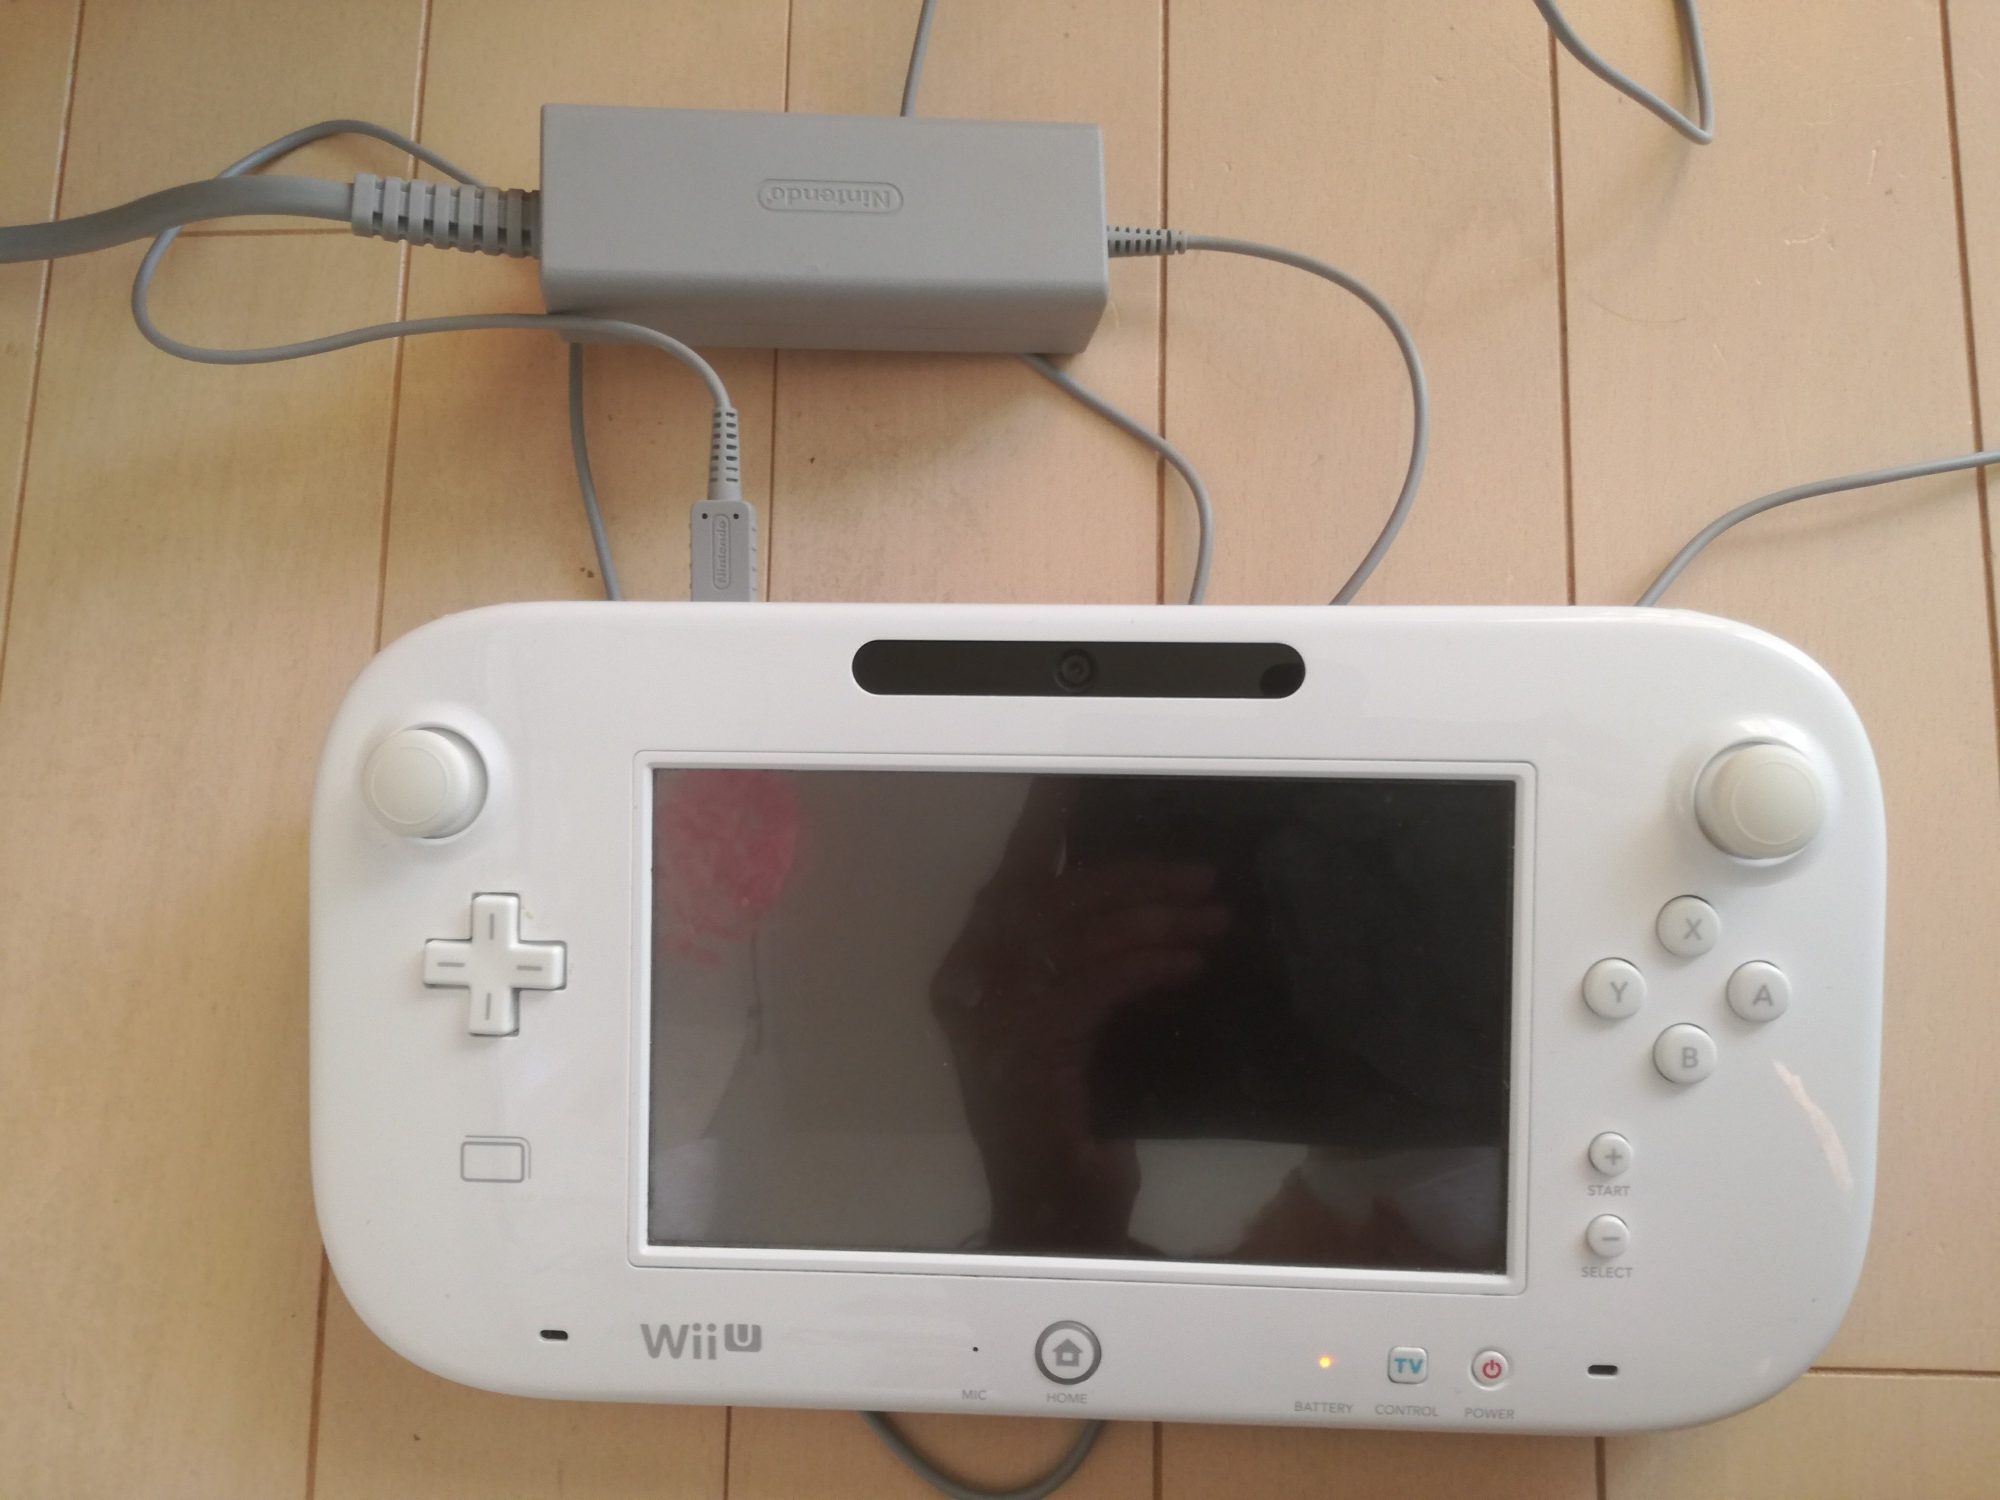 Wii U Gamepadの電源が入らない １人カラオケがしたいので修理にだす 40代メタボランナー 目標サブ4